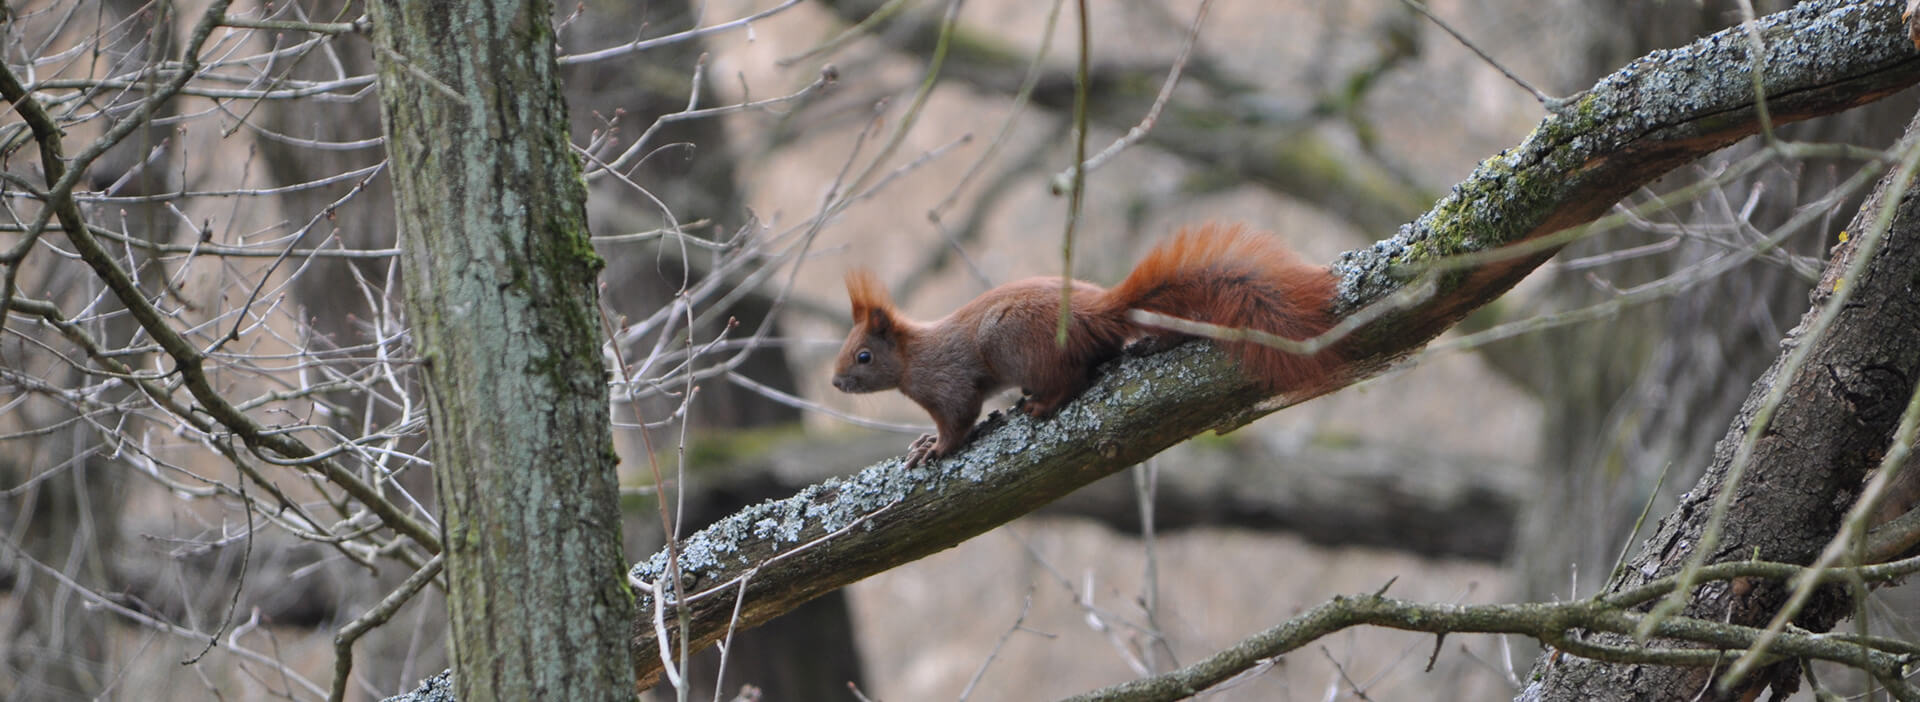 Eichhörnchen Foto: M. Kreiling